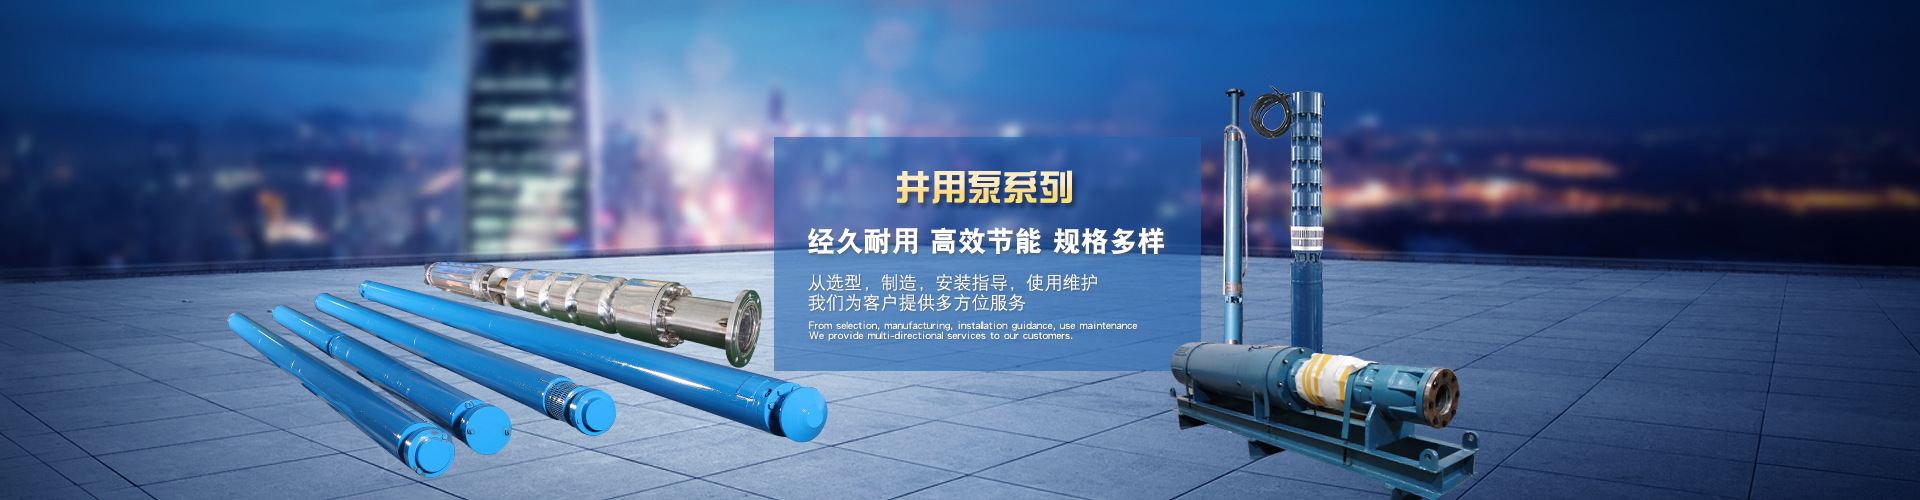 天津双河泵业有限公司